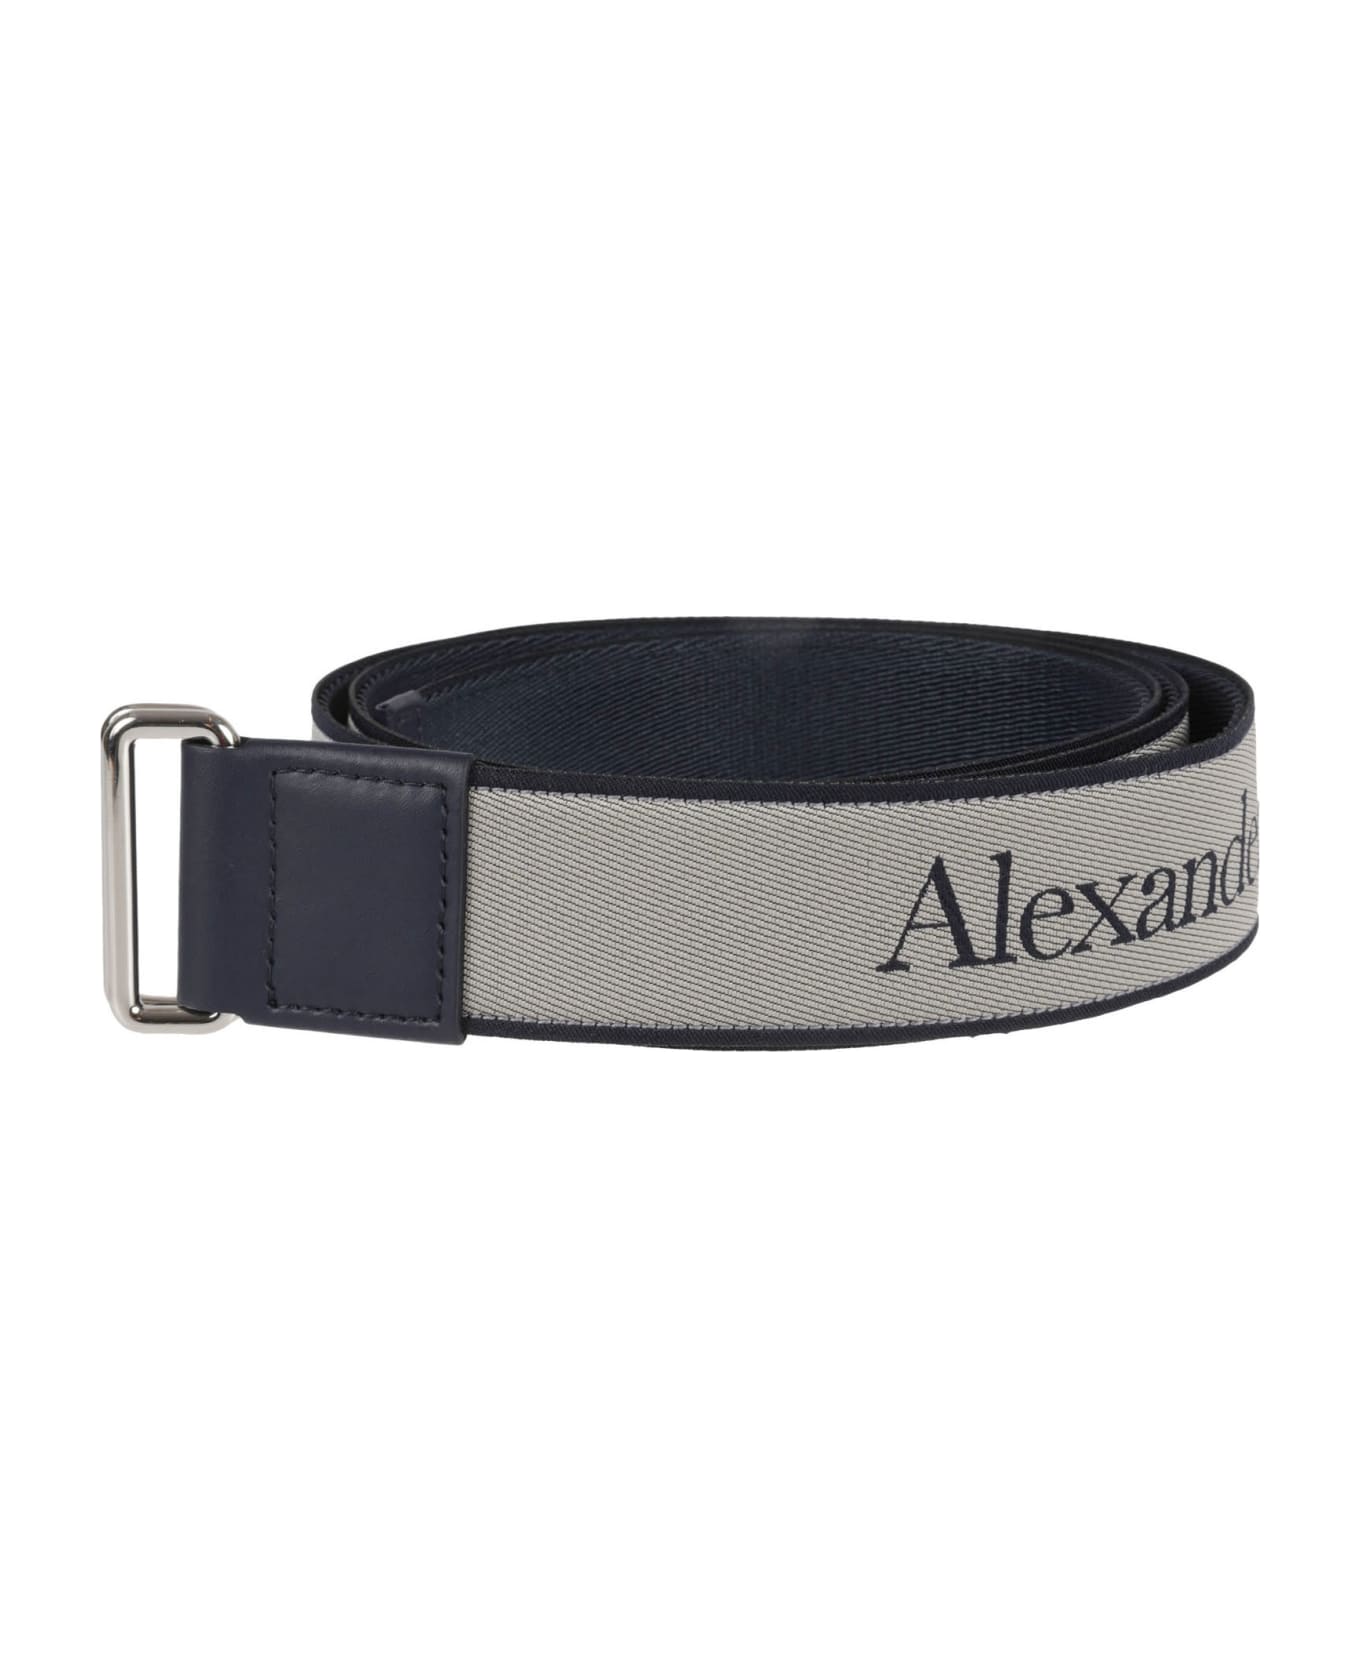 Alexander McQueen Camera Belt - Navy/Grey